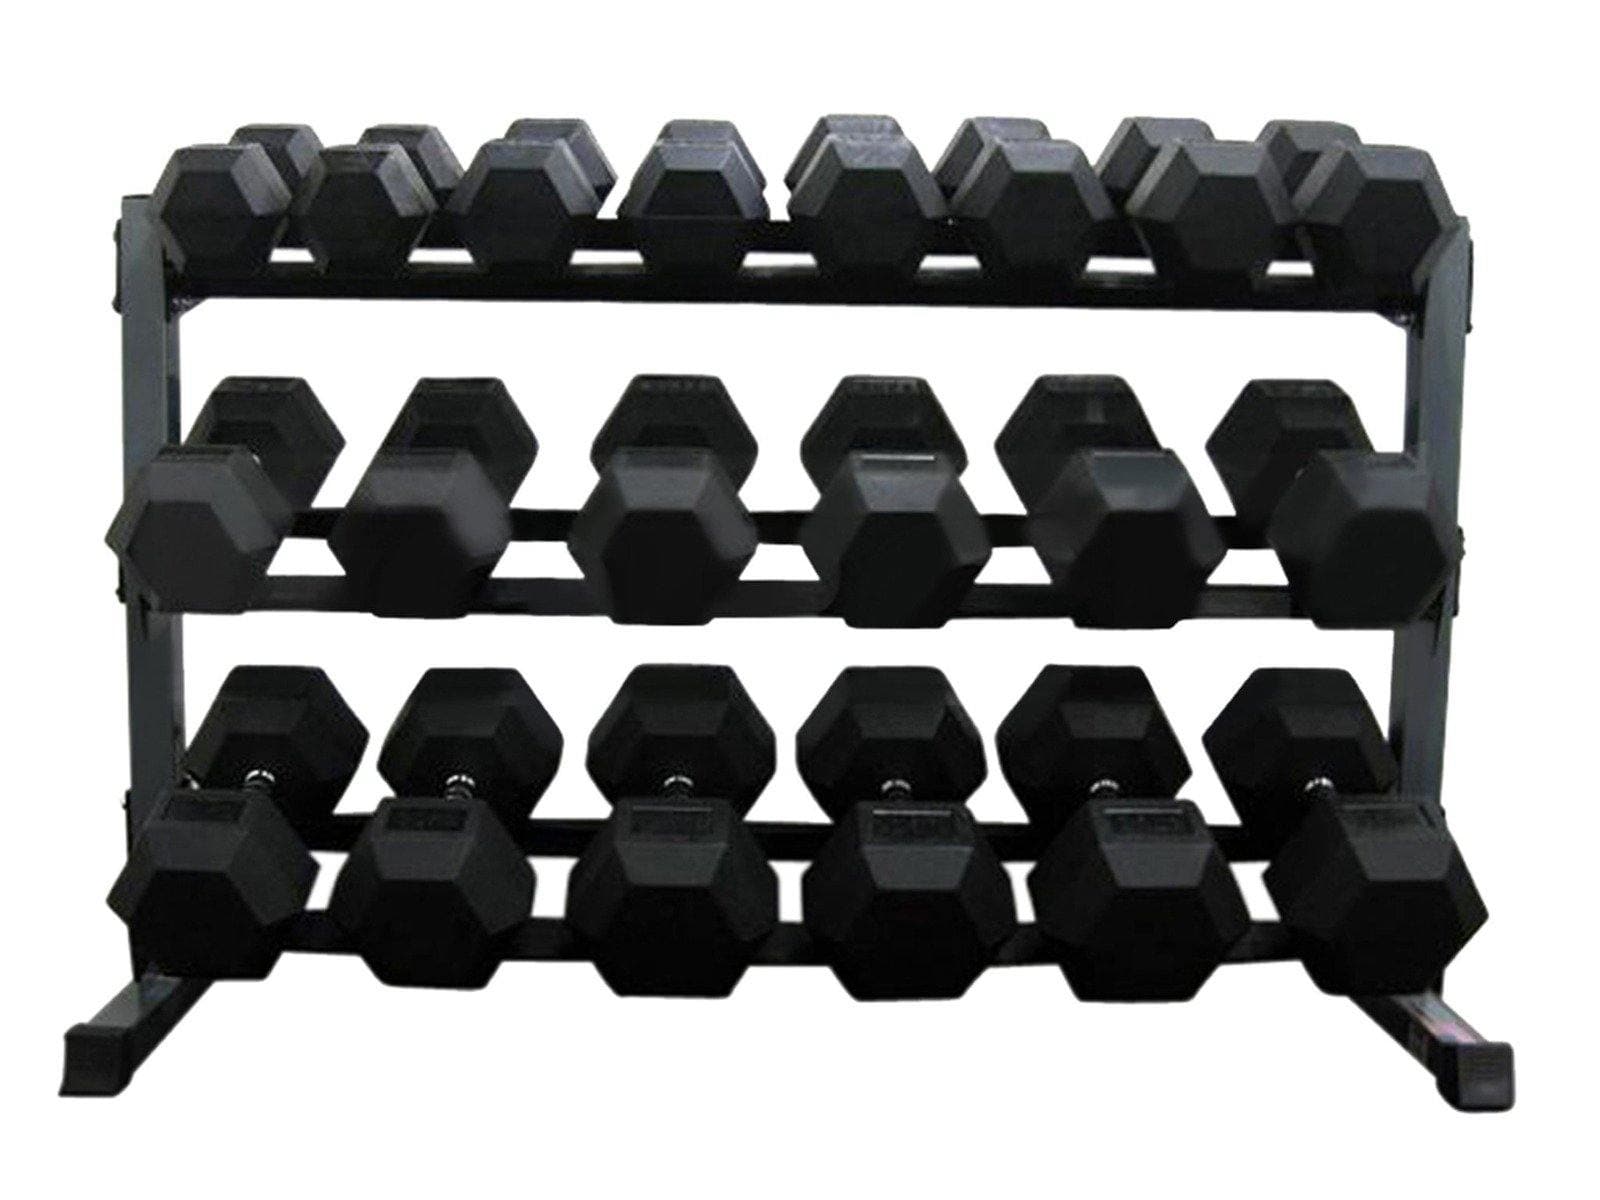 1-50kg Rubber Hexagonal Dumbbell Set With TWO x 3-Tier Dumbbell Racks - Musclemania Fitness MegaStore